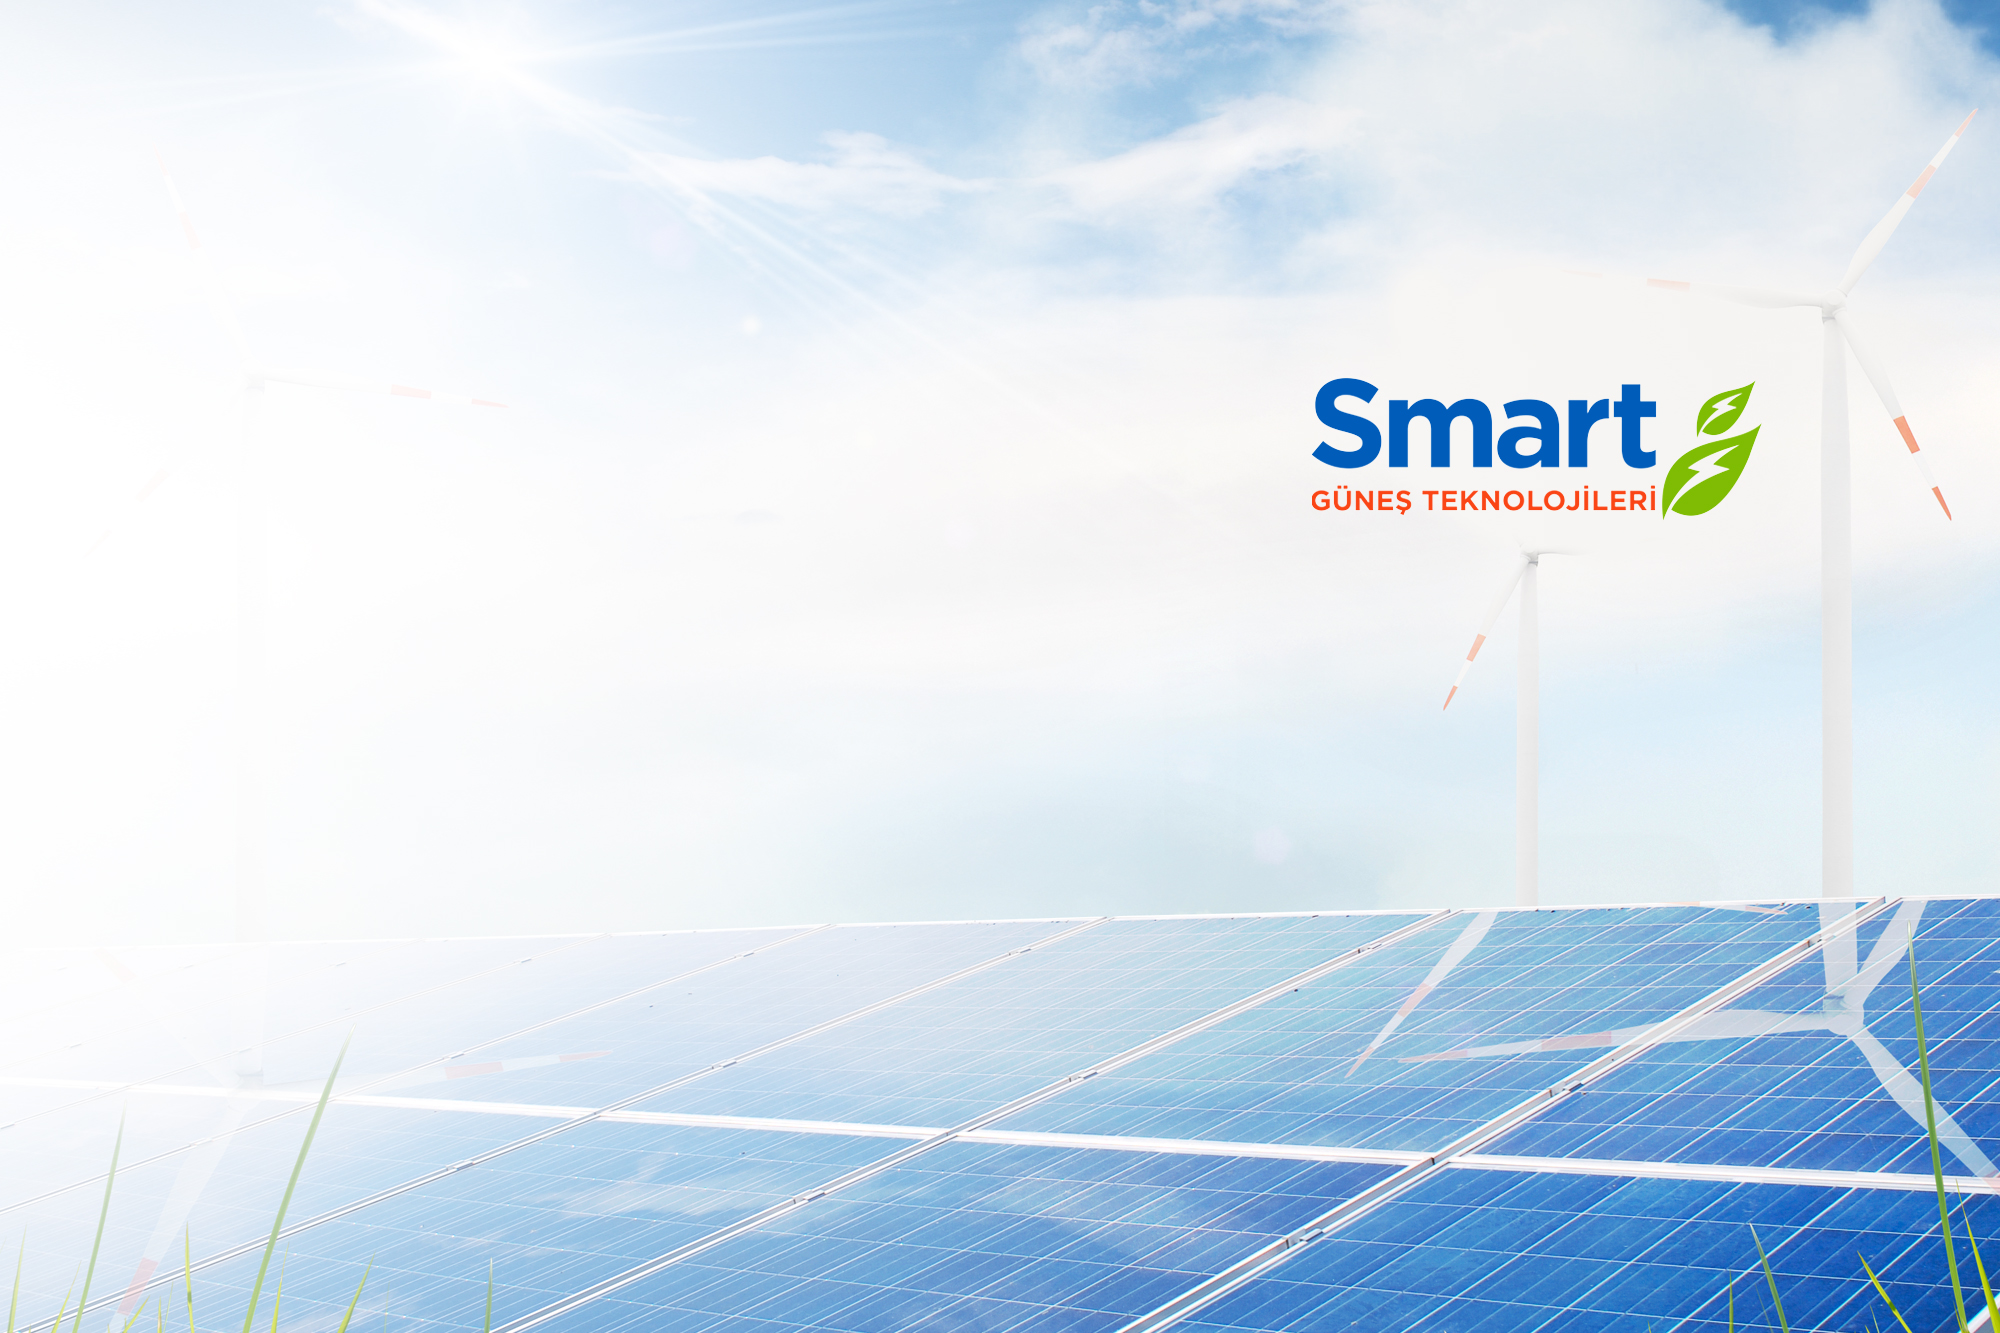 Smart Güneş Teknolojileri 1 Ekim itibarıyla BIST 100’deki yerini alıyor